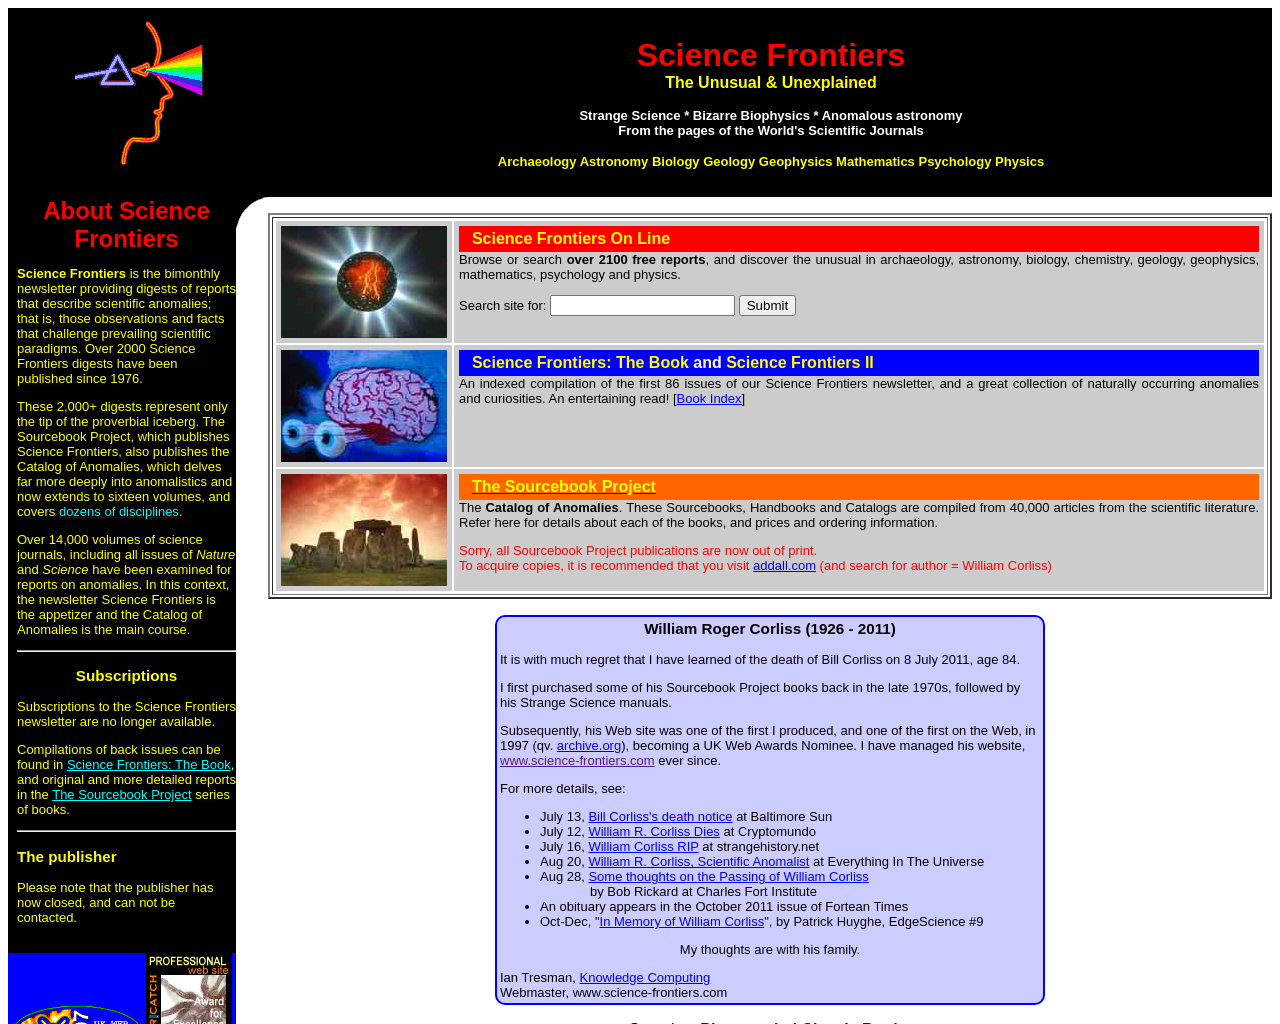 science-frontiers.com